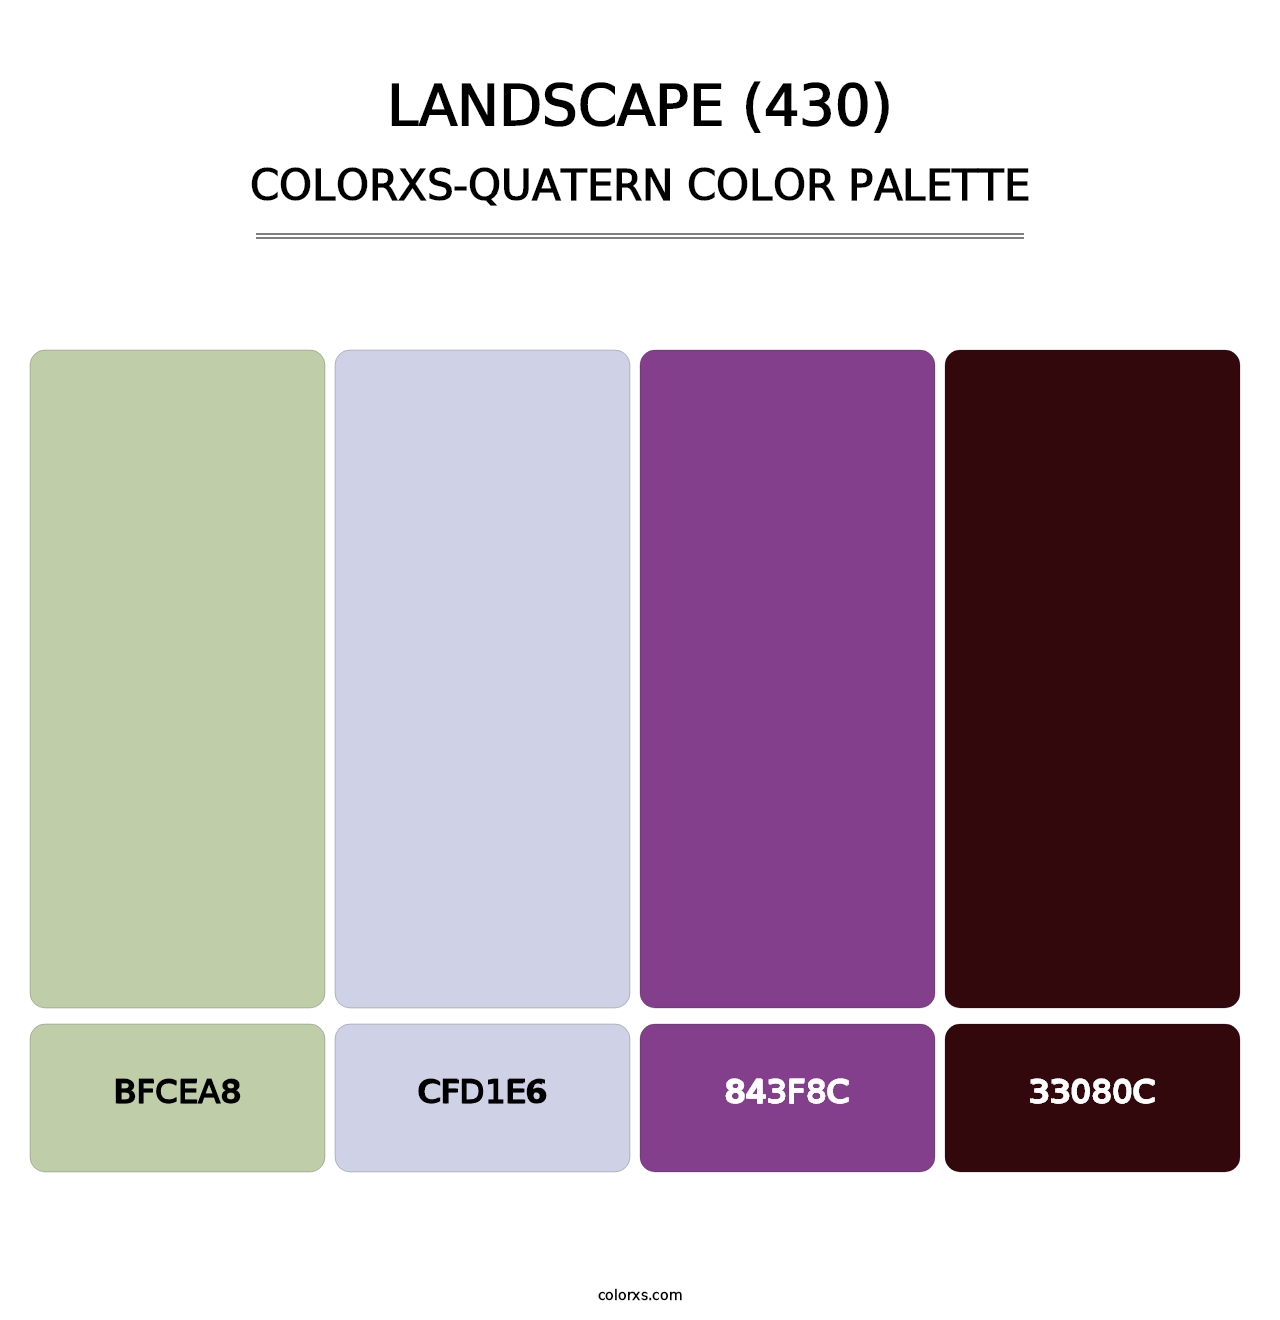 Landscape (430) - Colorxs Quatern Palette